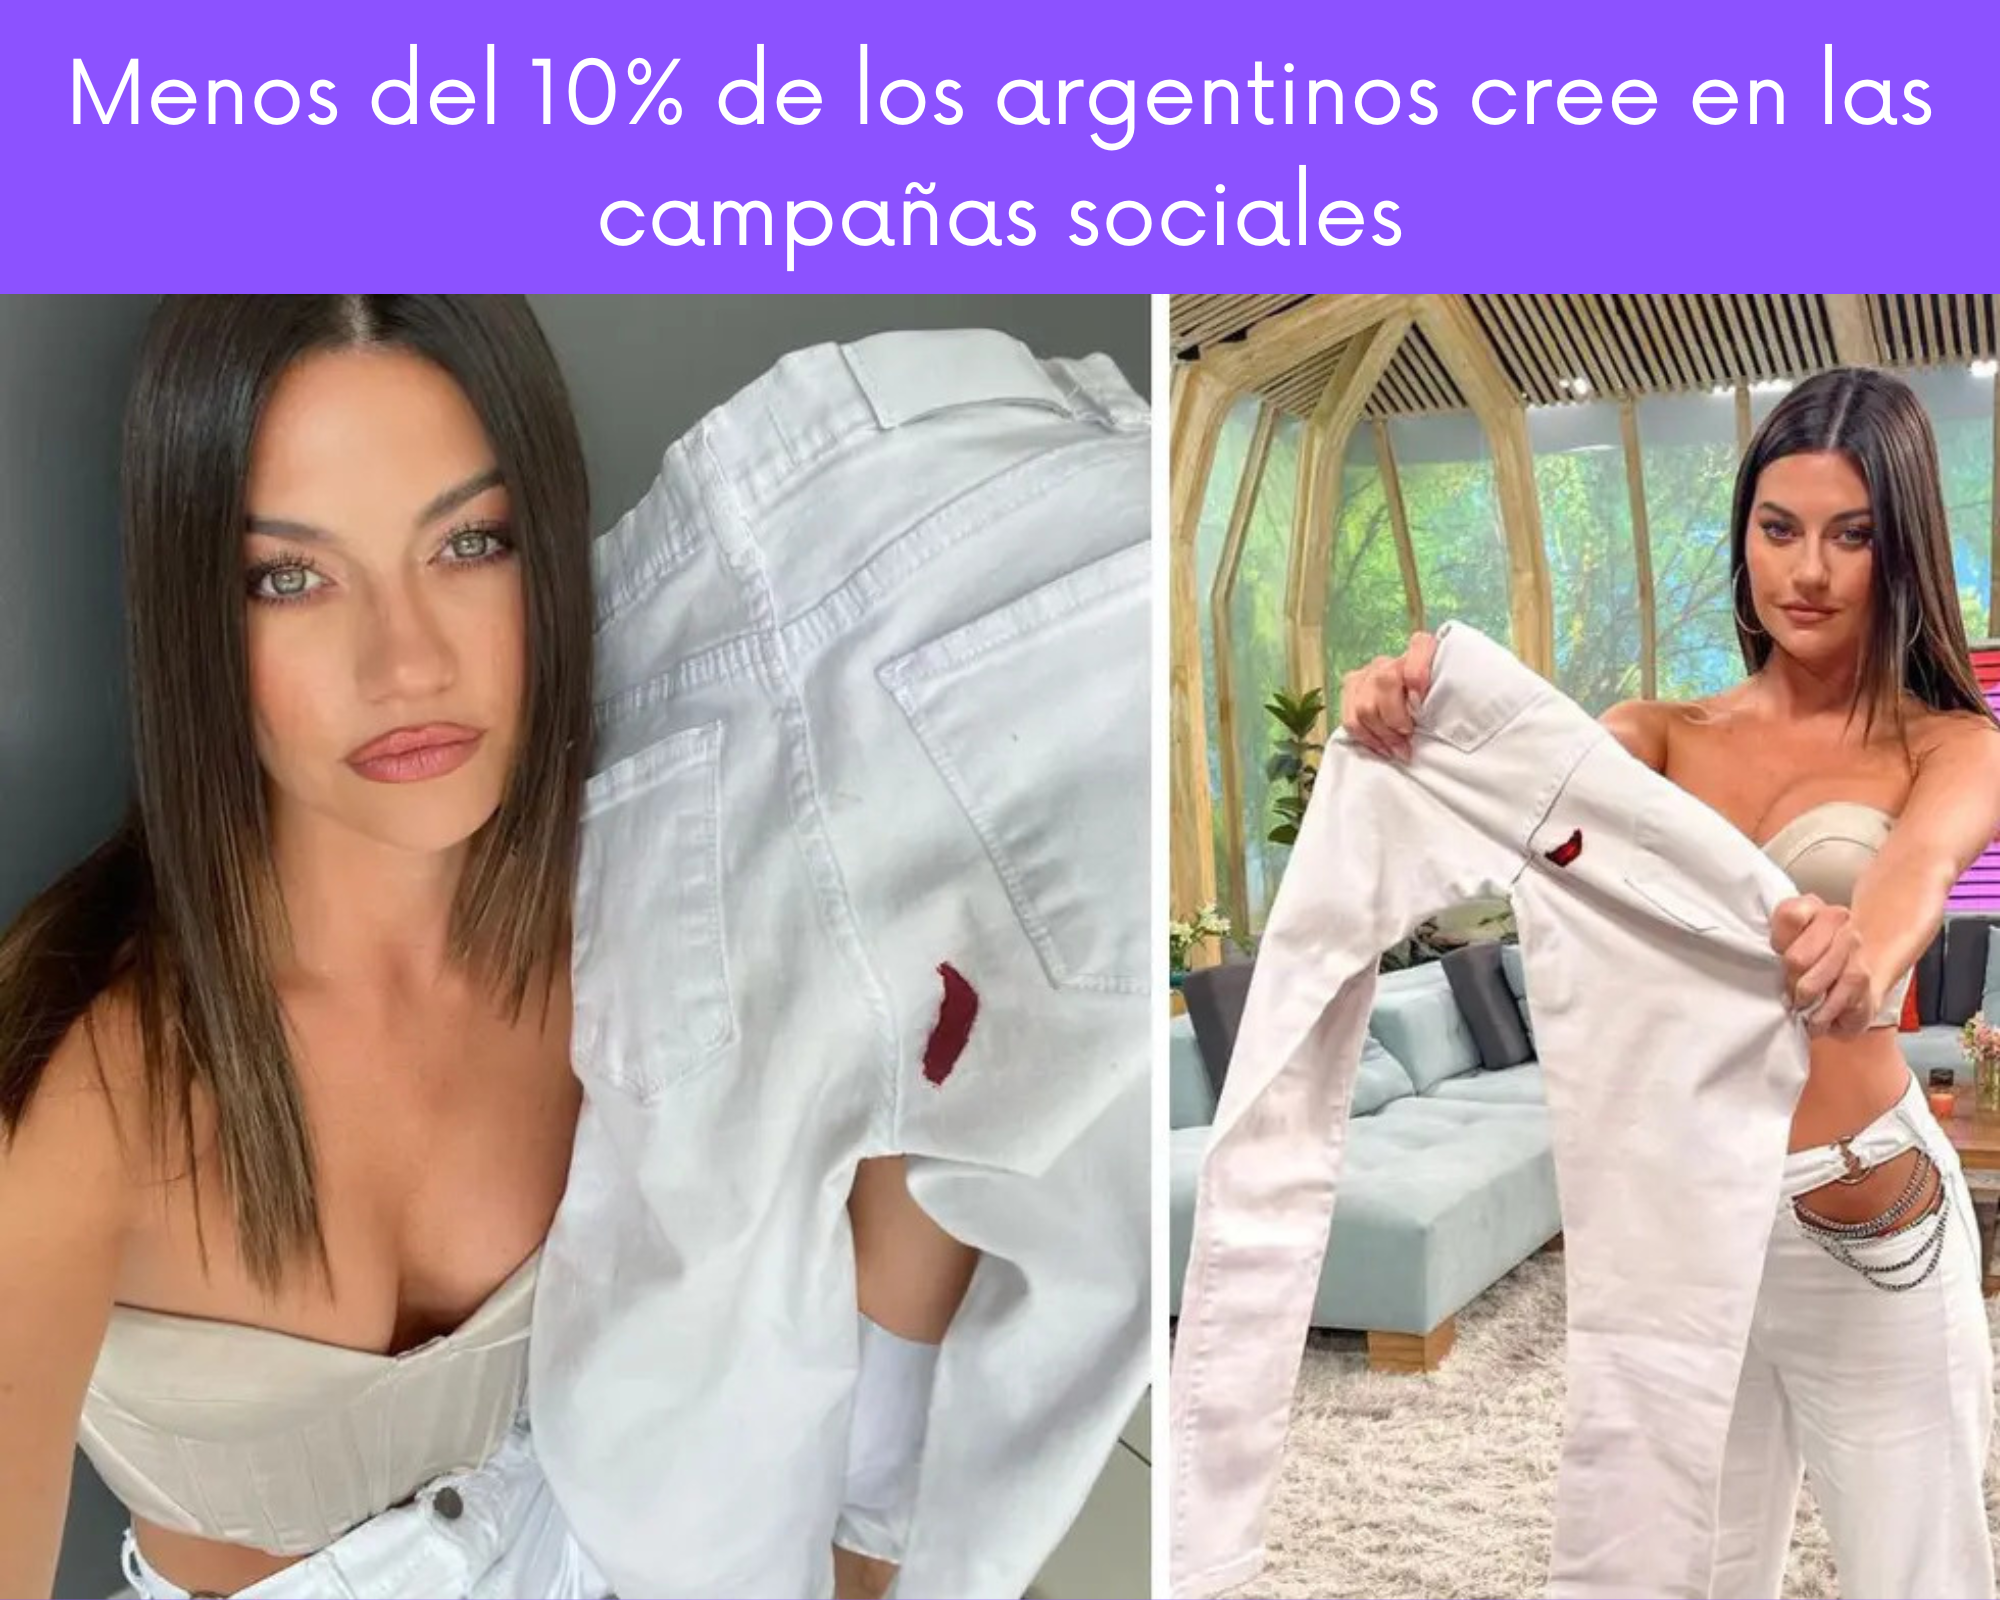 Los argentinos incrédulos ante las campañas sociales de las empresas.